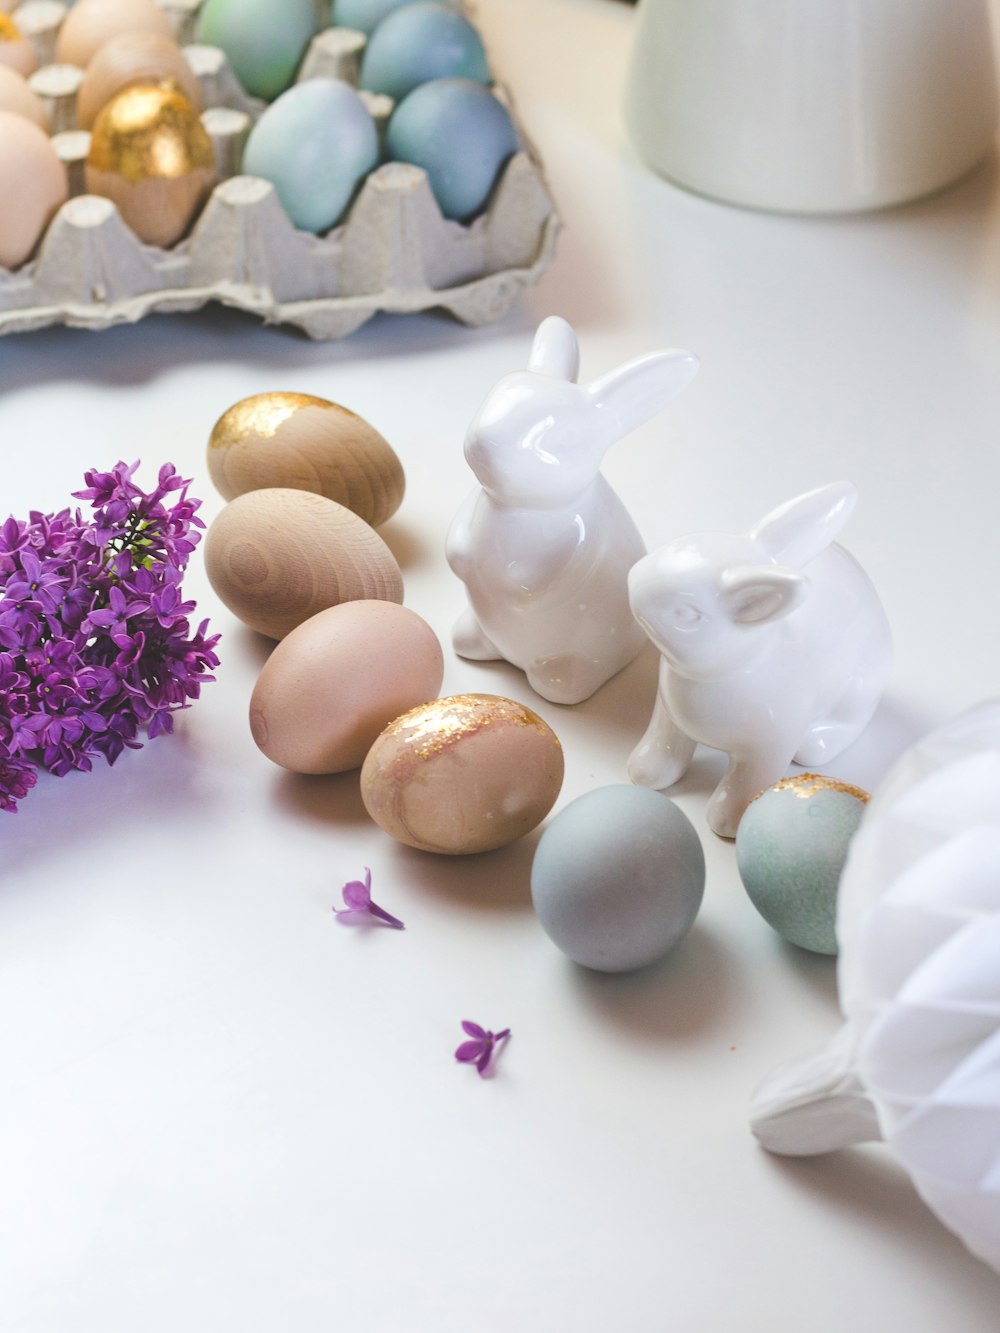 white rabbit figurine beside brown egg shell